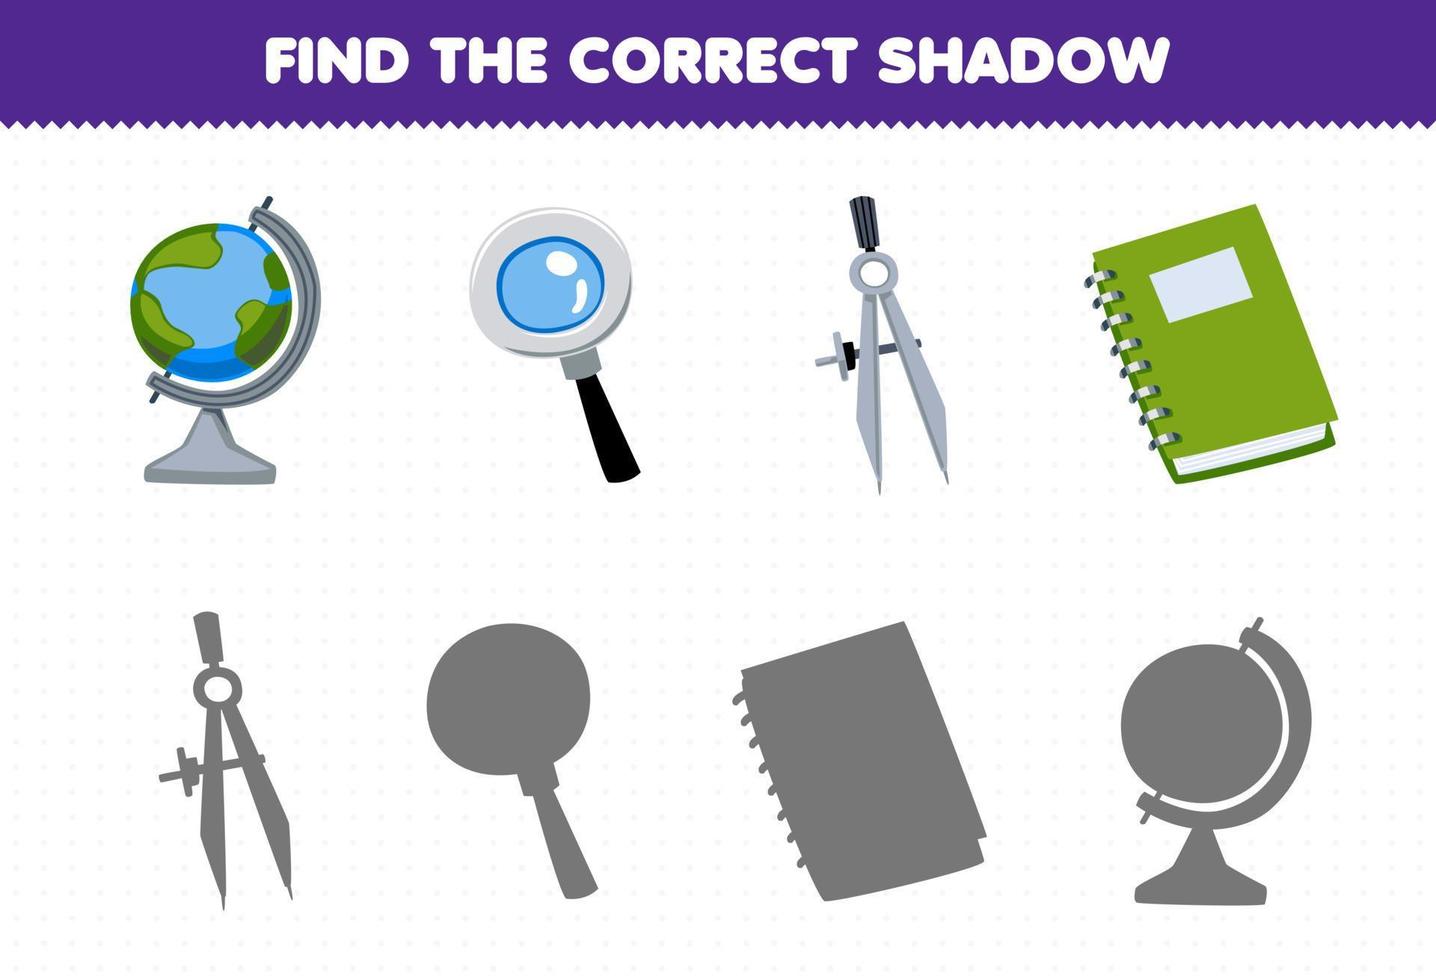 juego educativo para niños encontrar la sombra correcta conjunto de dibujos animados lindo globo lupa divisor libro herramienta imprimible hoja de trabajo vector